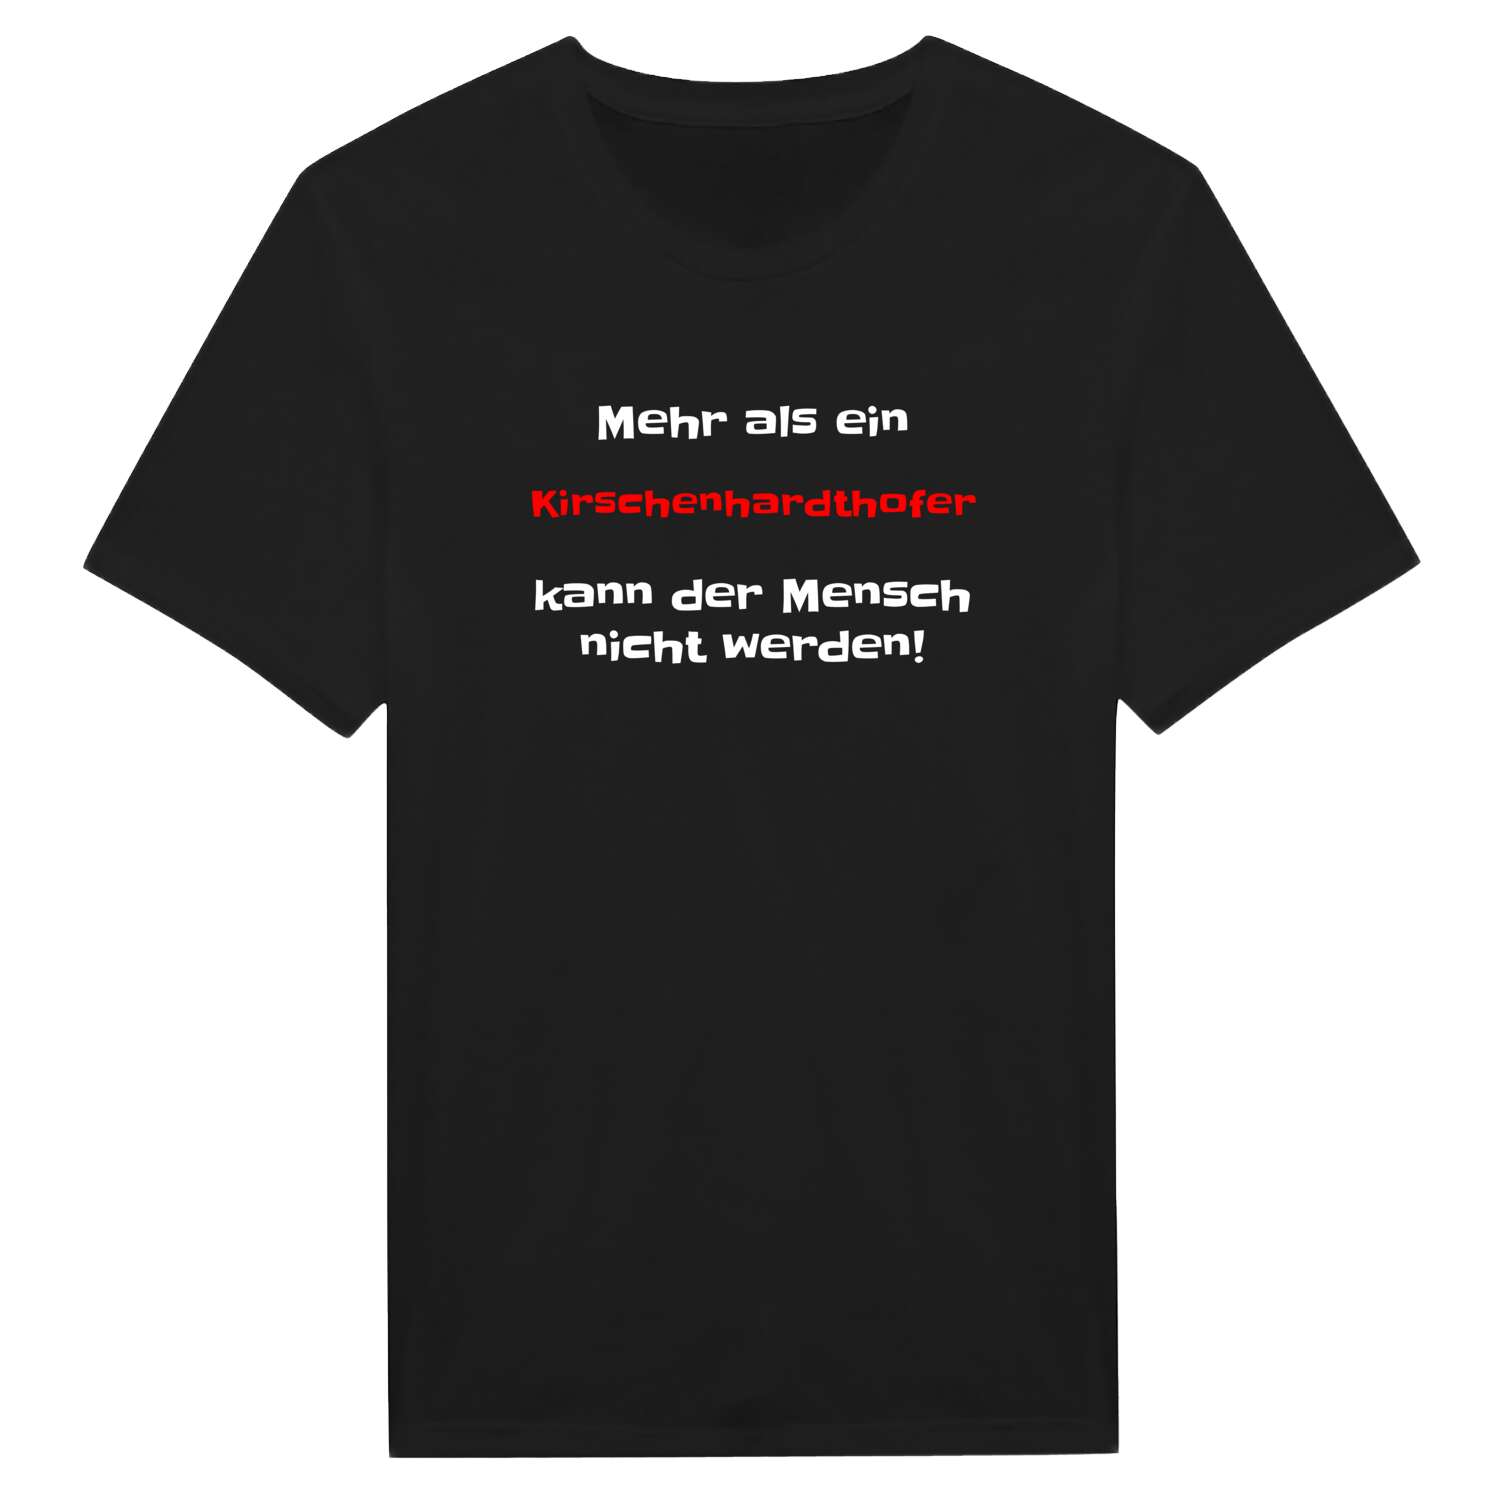 Kirschenhardthof T-Shirt »Mehr als ein«